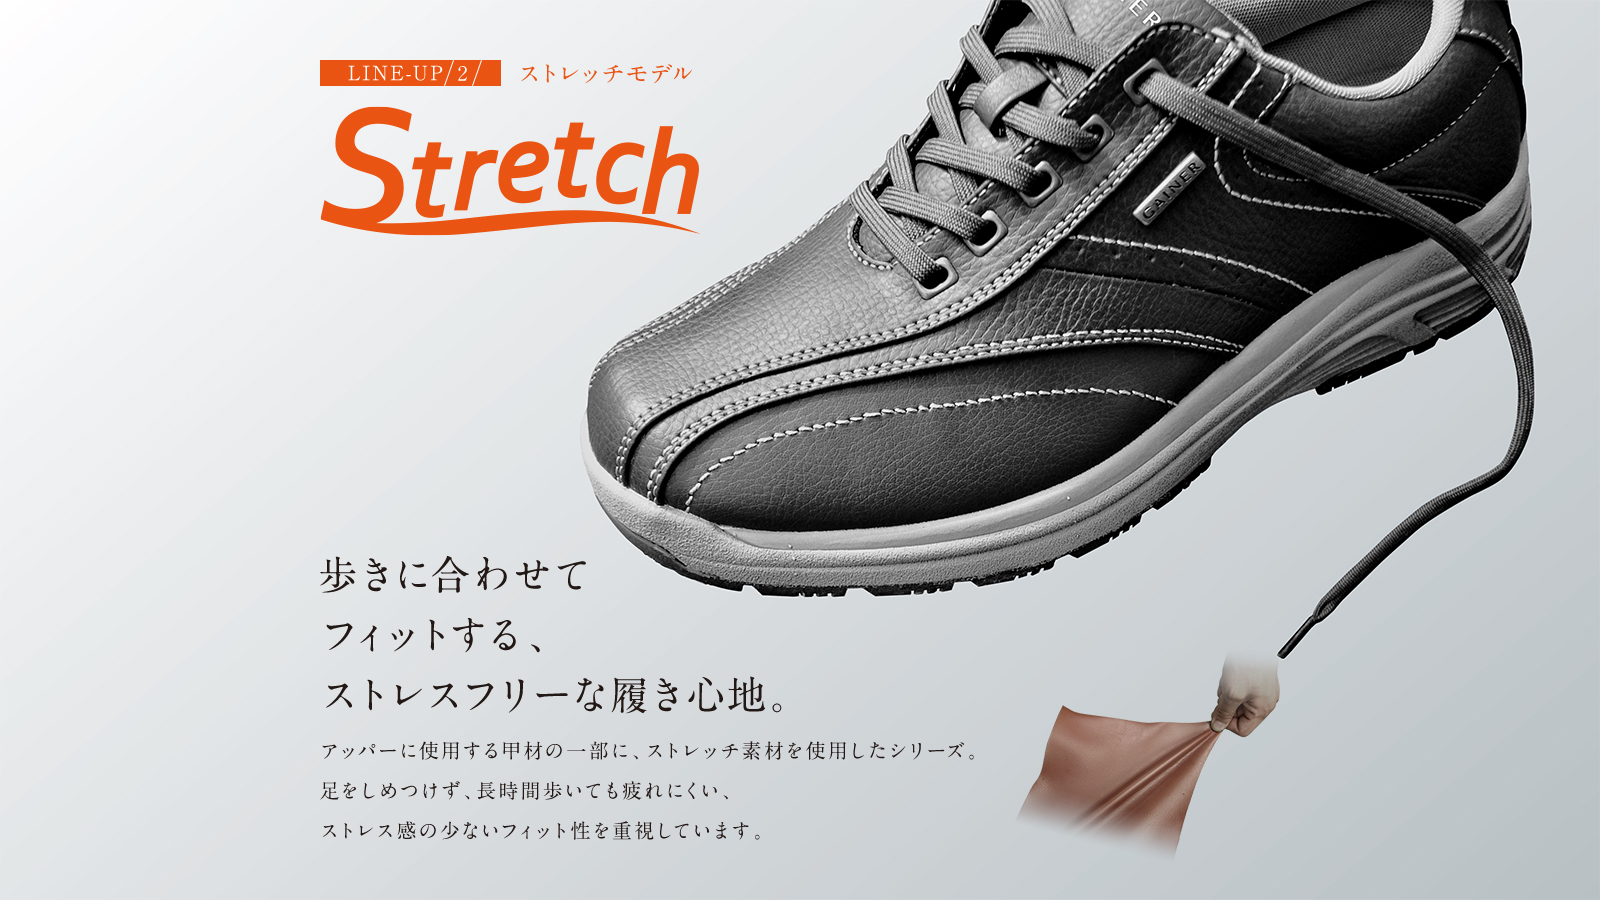 Stretch 歩きに合わせてフィットする、ストレスフリーな履き心地。アッパーに使用する甲材の一部に、ストレッチ素材を使用したシリーズ。足をしめつけず、長時間歩いても疲れにくい、ストレス感の少ないフィット性を重視しています。